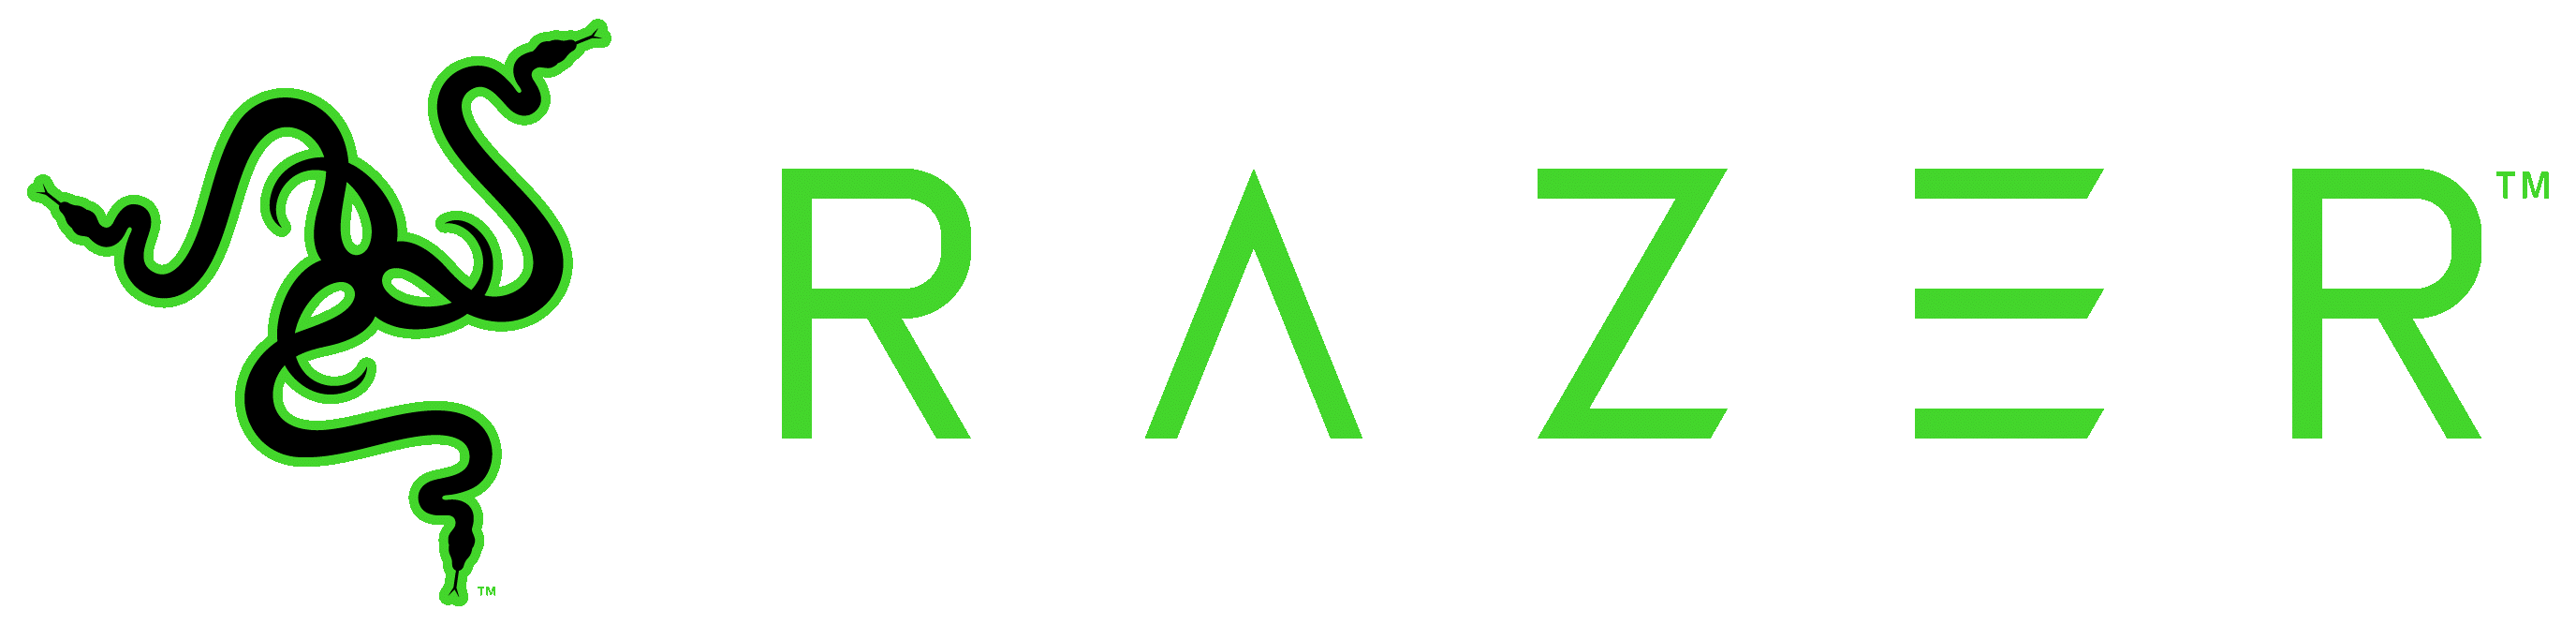 Logotipo de Razer.